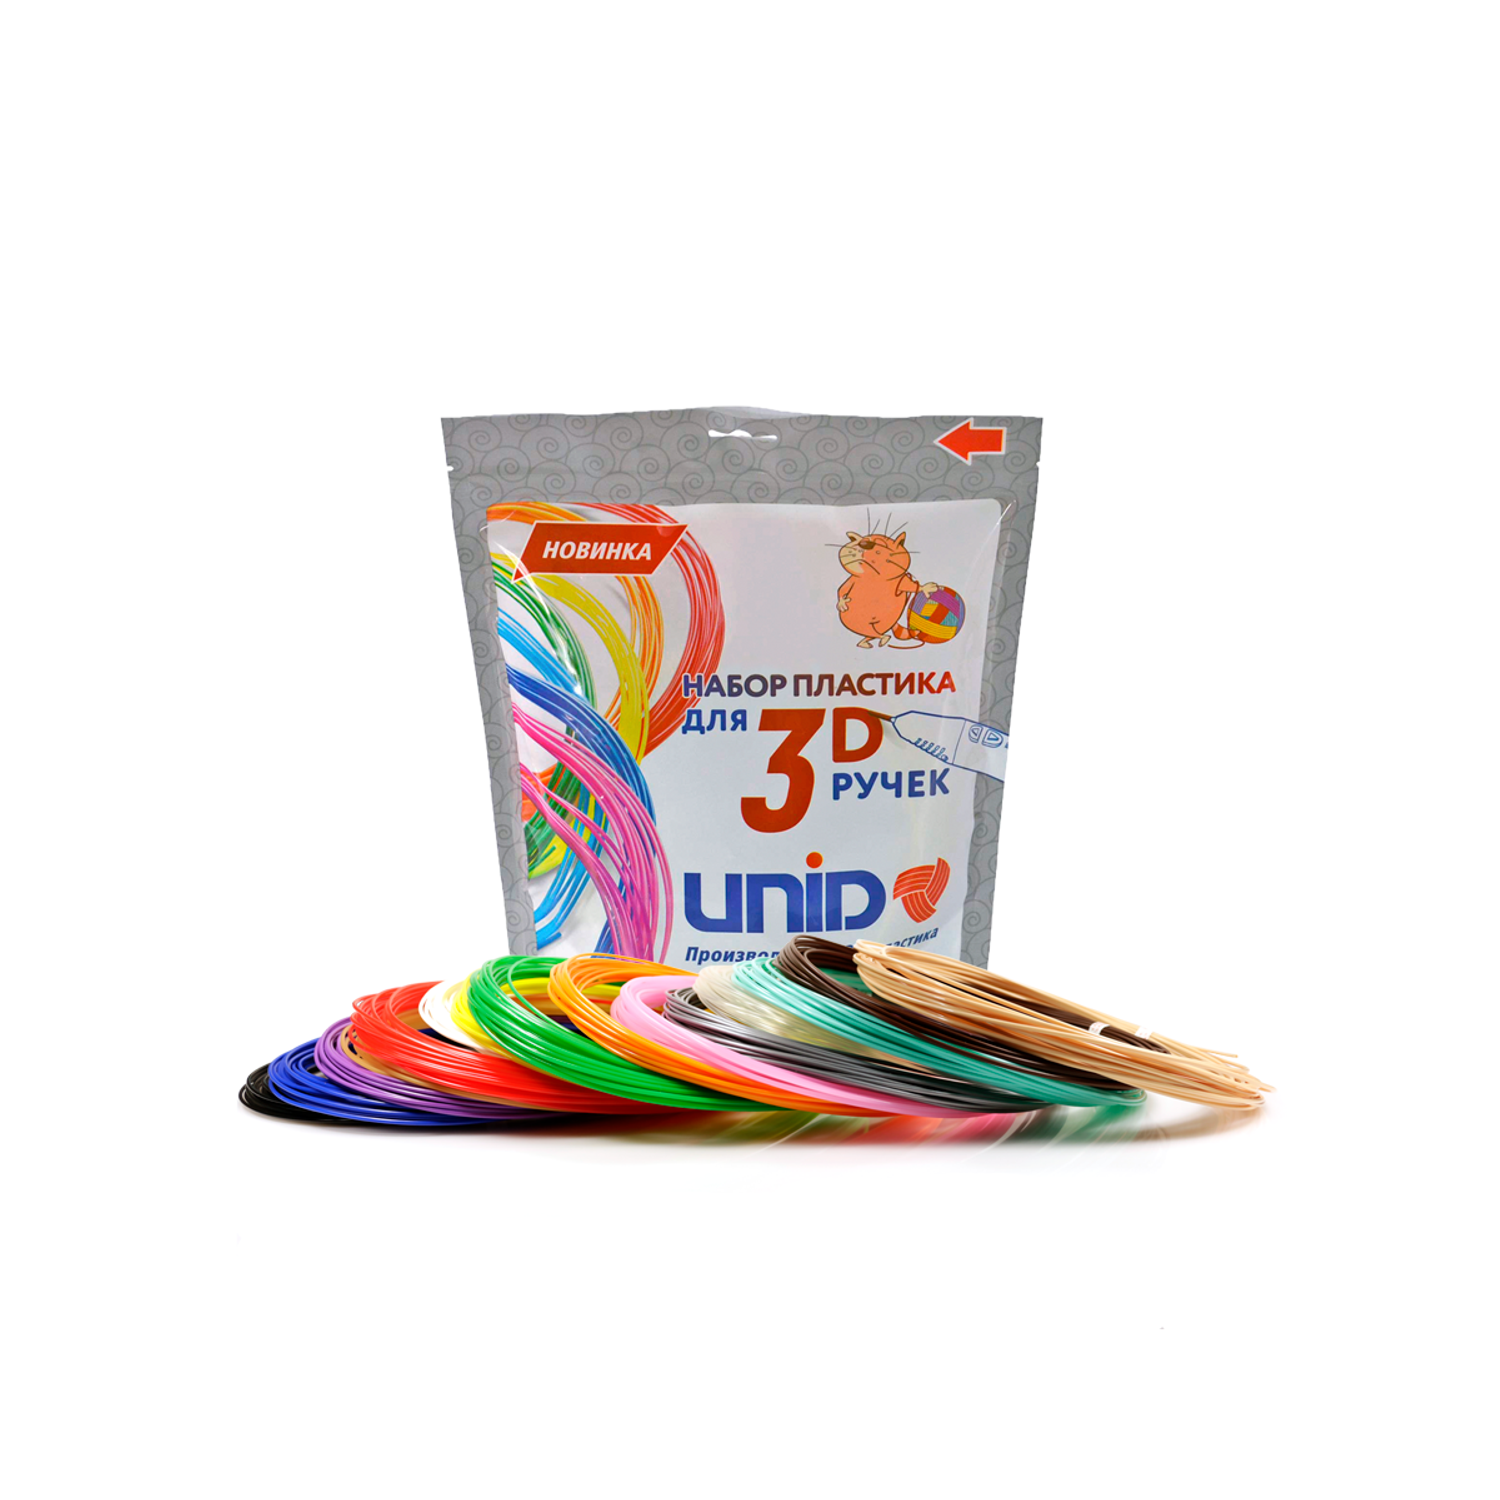 Пластик для 3д ручки UNID PLA15 - фото 1